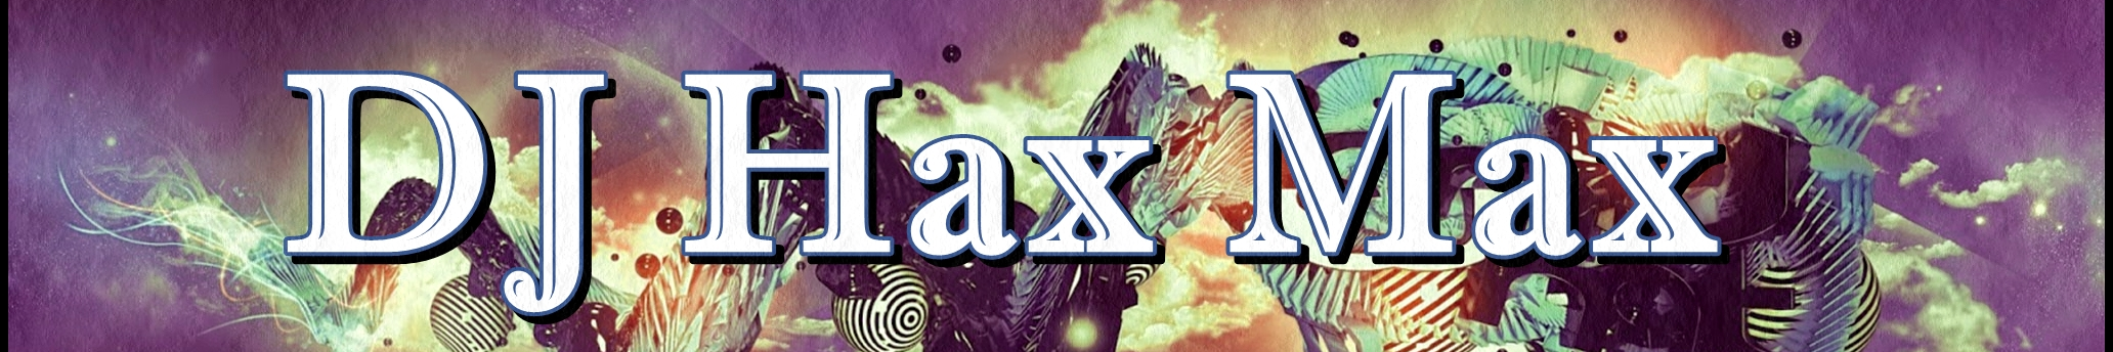 DJ Hax Max